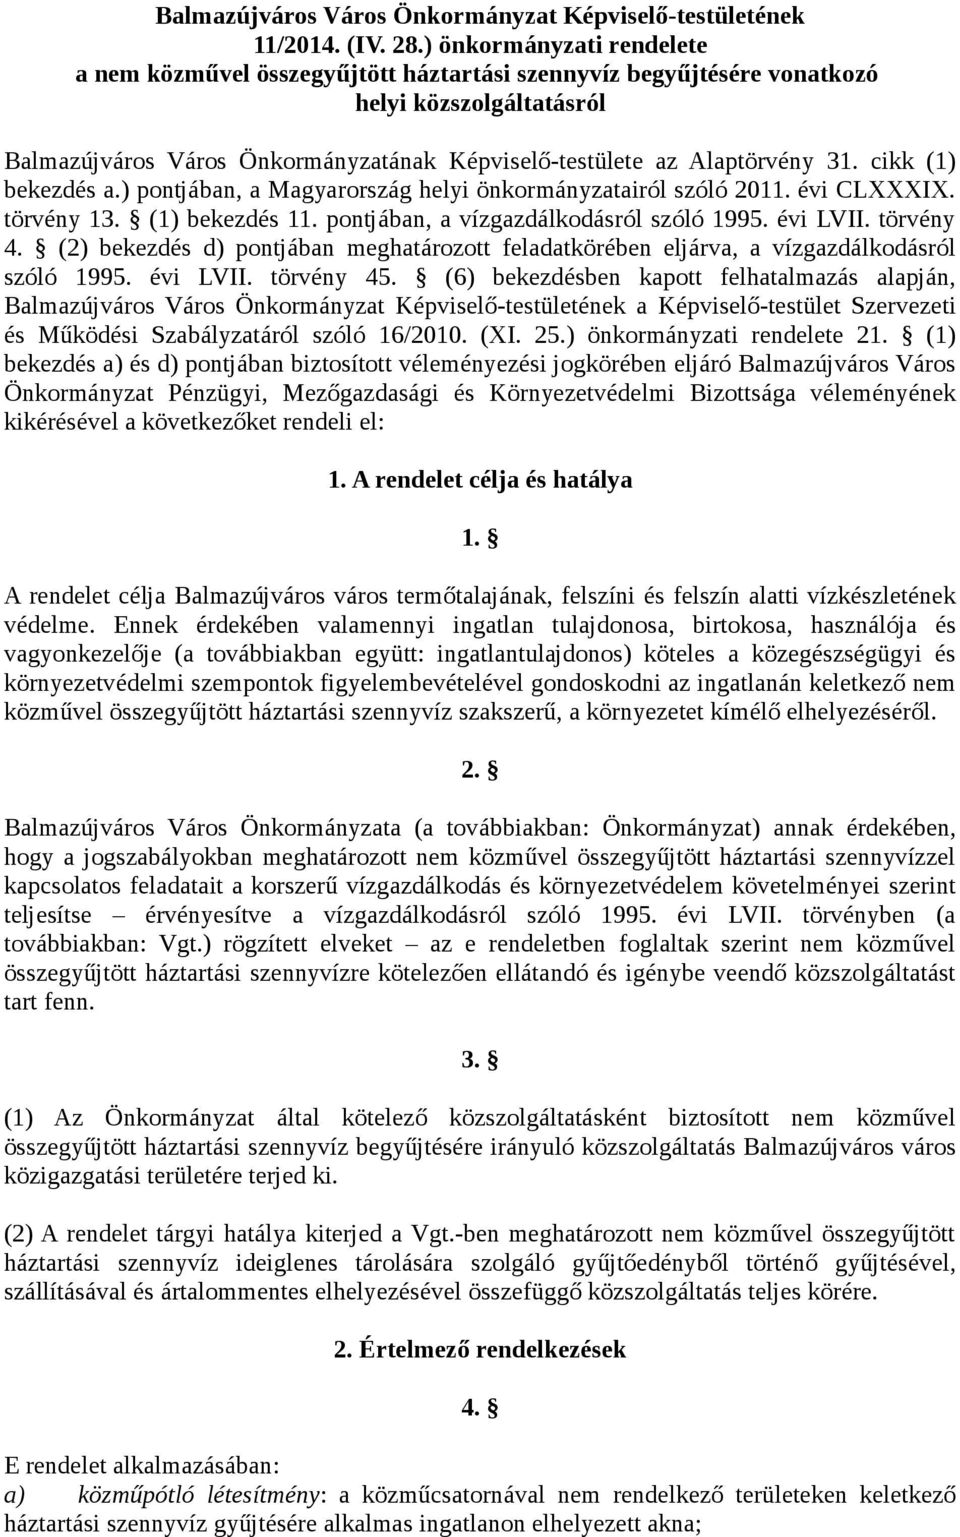 cikk (1) bekezdés a.) pontjában, a Magyarország helyi önkormányzatairól szóló 2011. évi CLXXXIX. törvény 13. (1) bekezdés 11. pontjában, a vízgazdálkodásról szóló 1995. évi LVII. törvény 4.